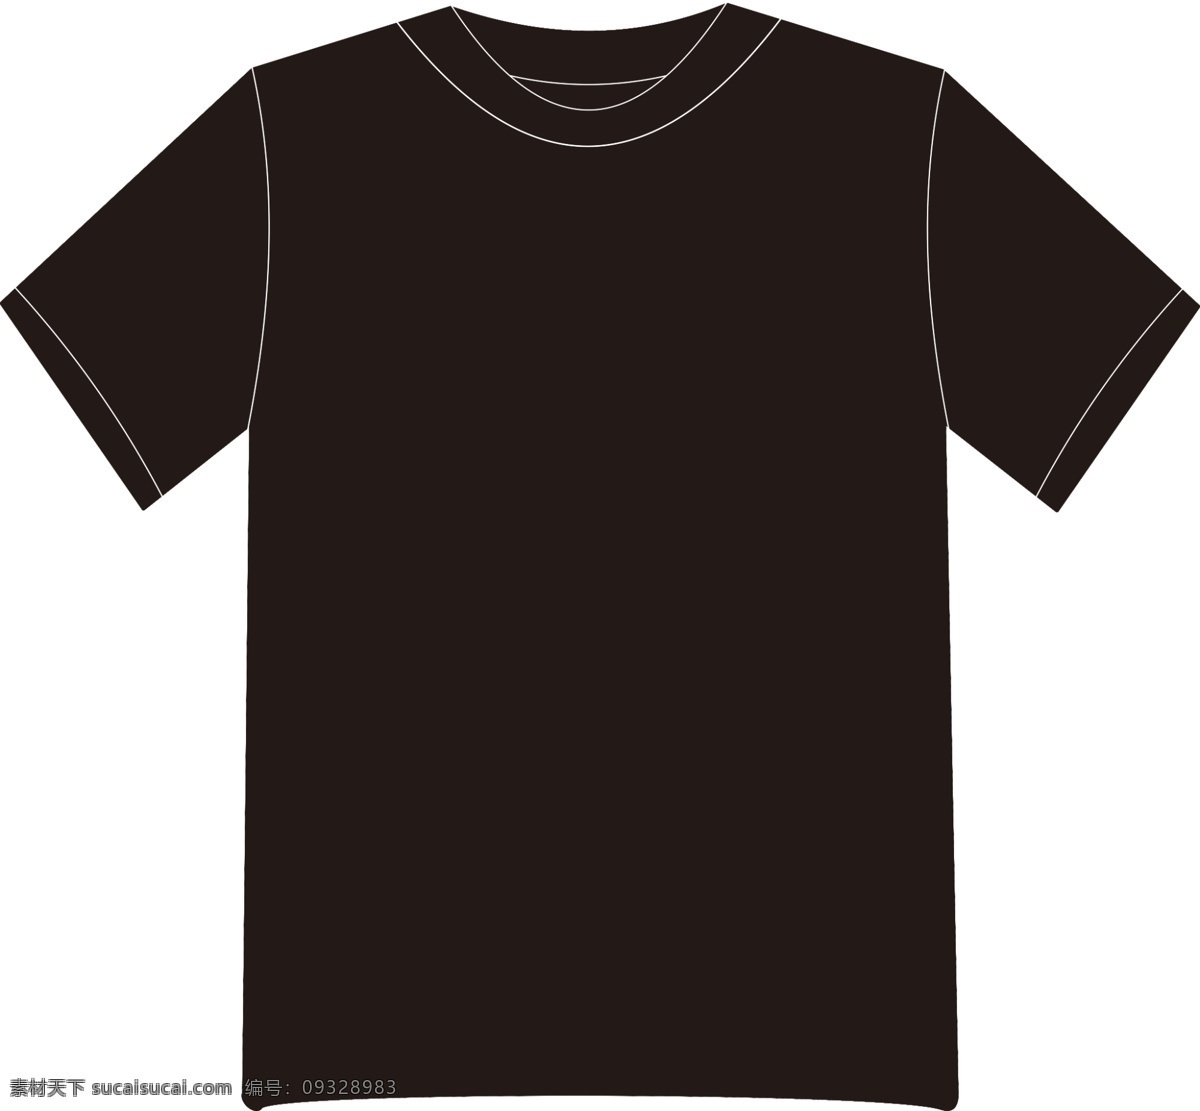 黑色t恤模板 黑色 体恤模板 汗衫模板 衣服模板 衣服定制